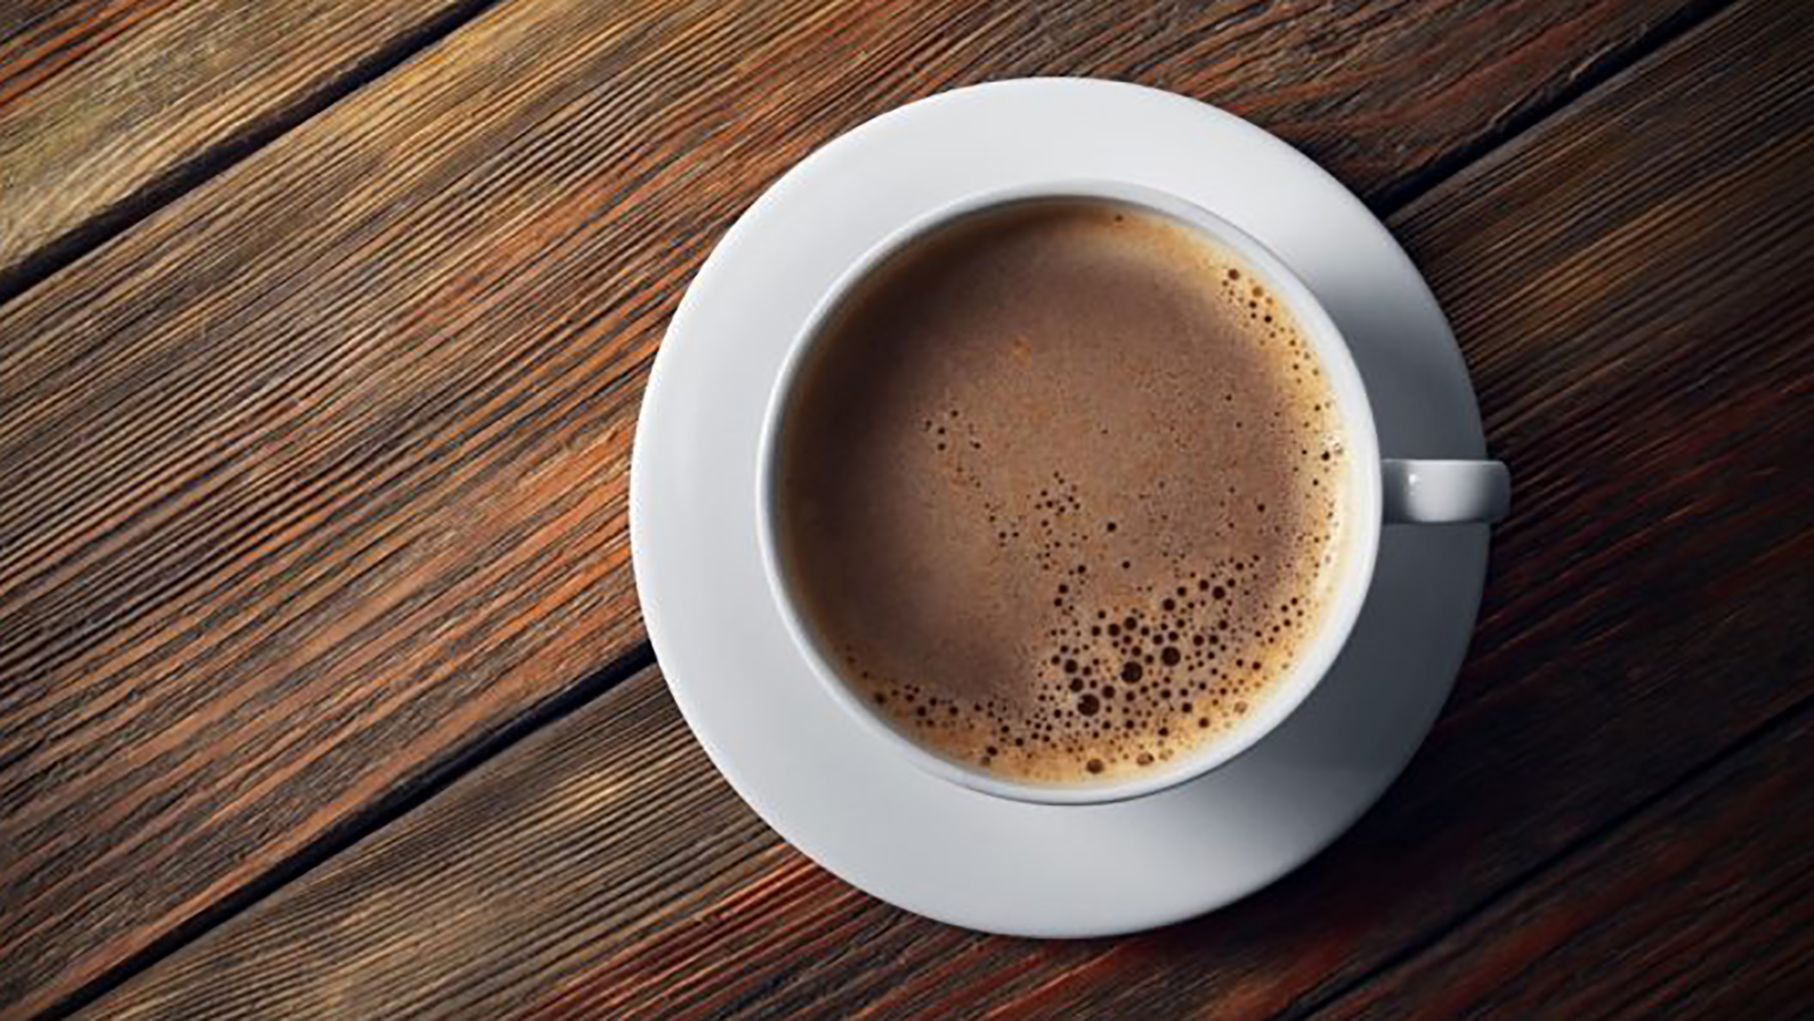 Якщо пити каву одразу після прокидання, то спати хочеться ще більше: дослідження
